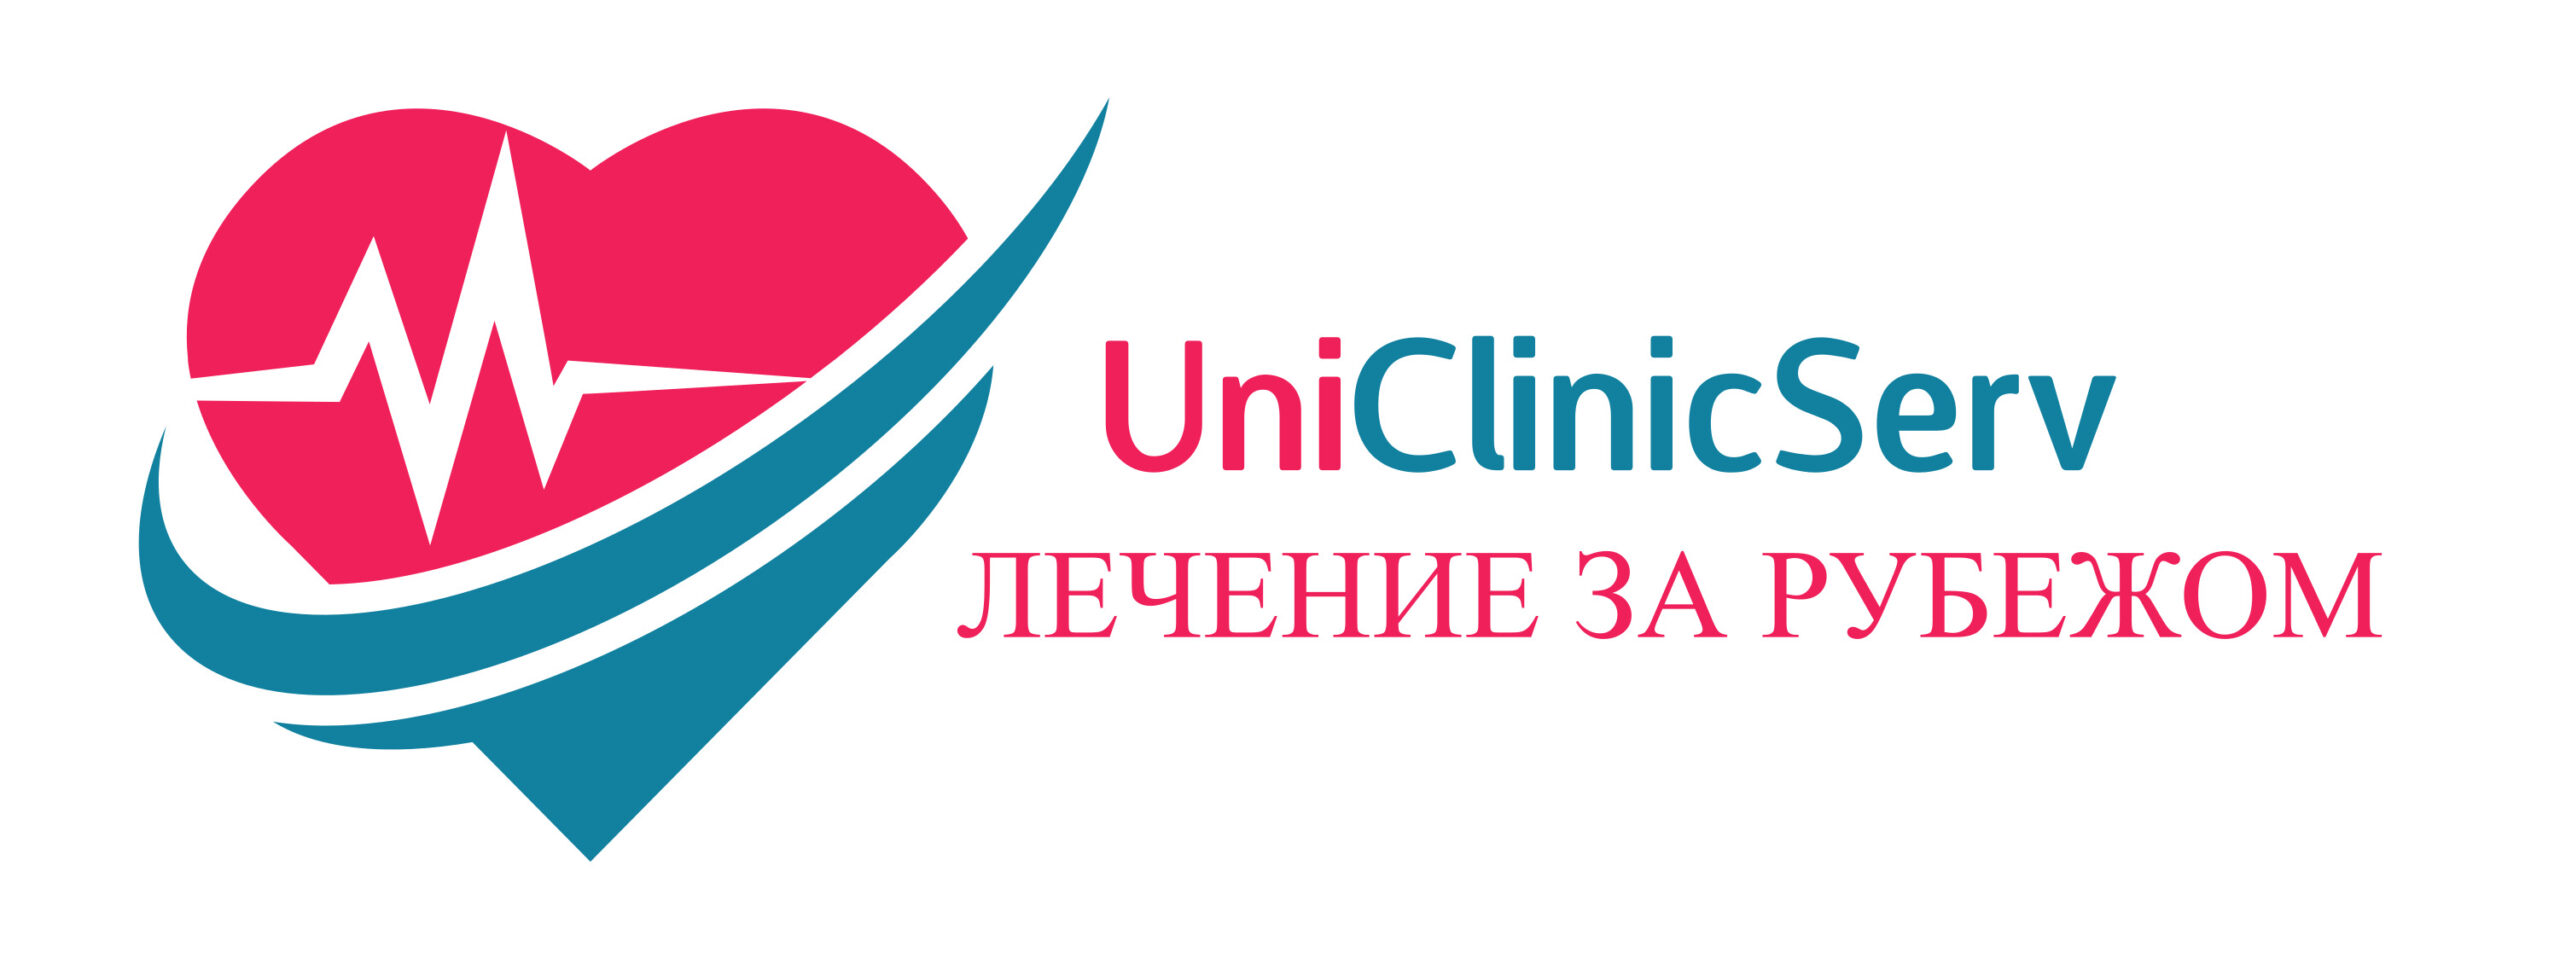 uniclinicserv